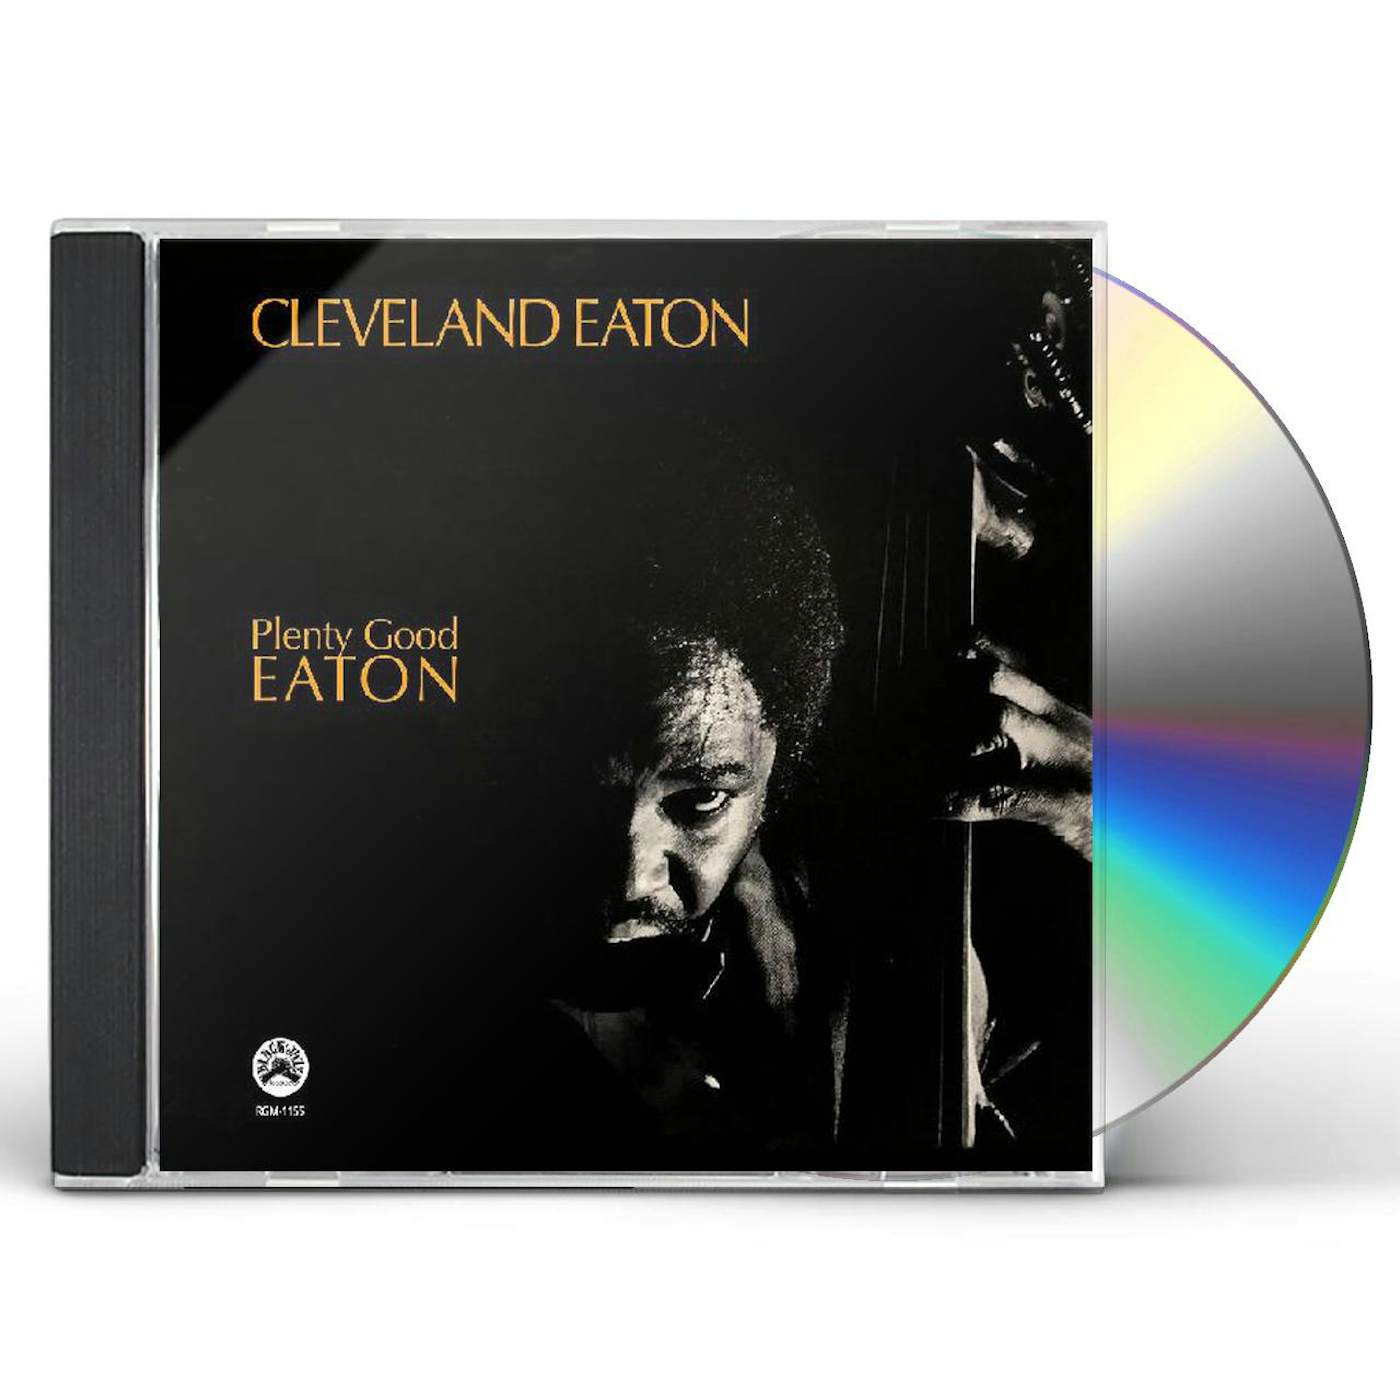 Cleveland Eaton PLENTY GOOD EATON CD